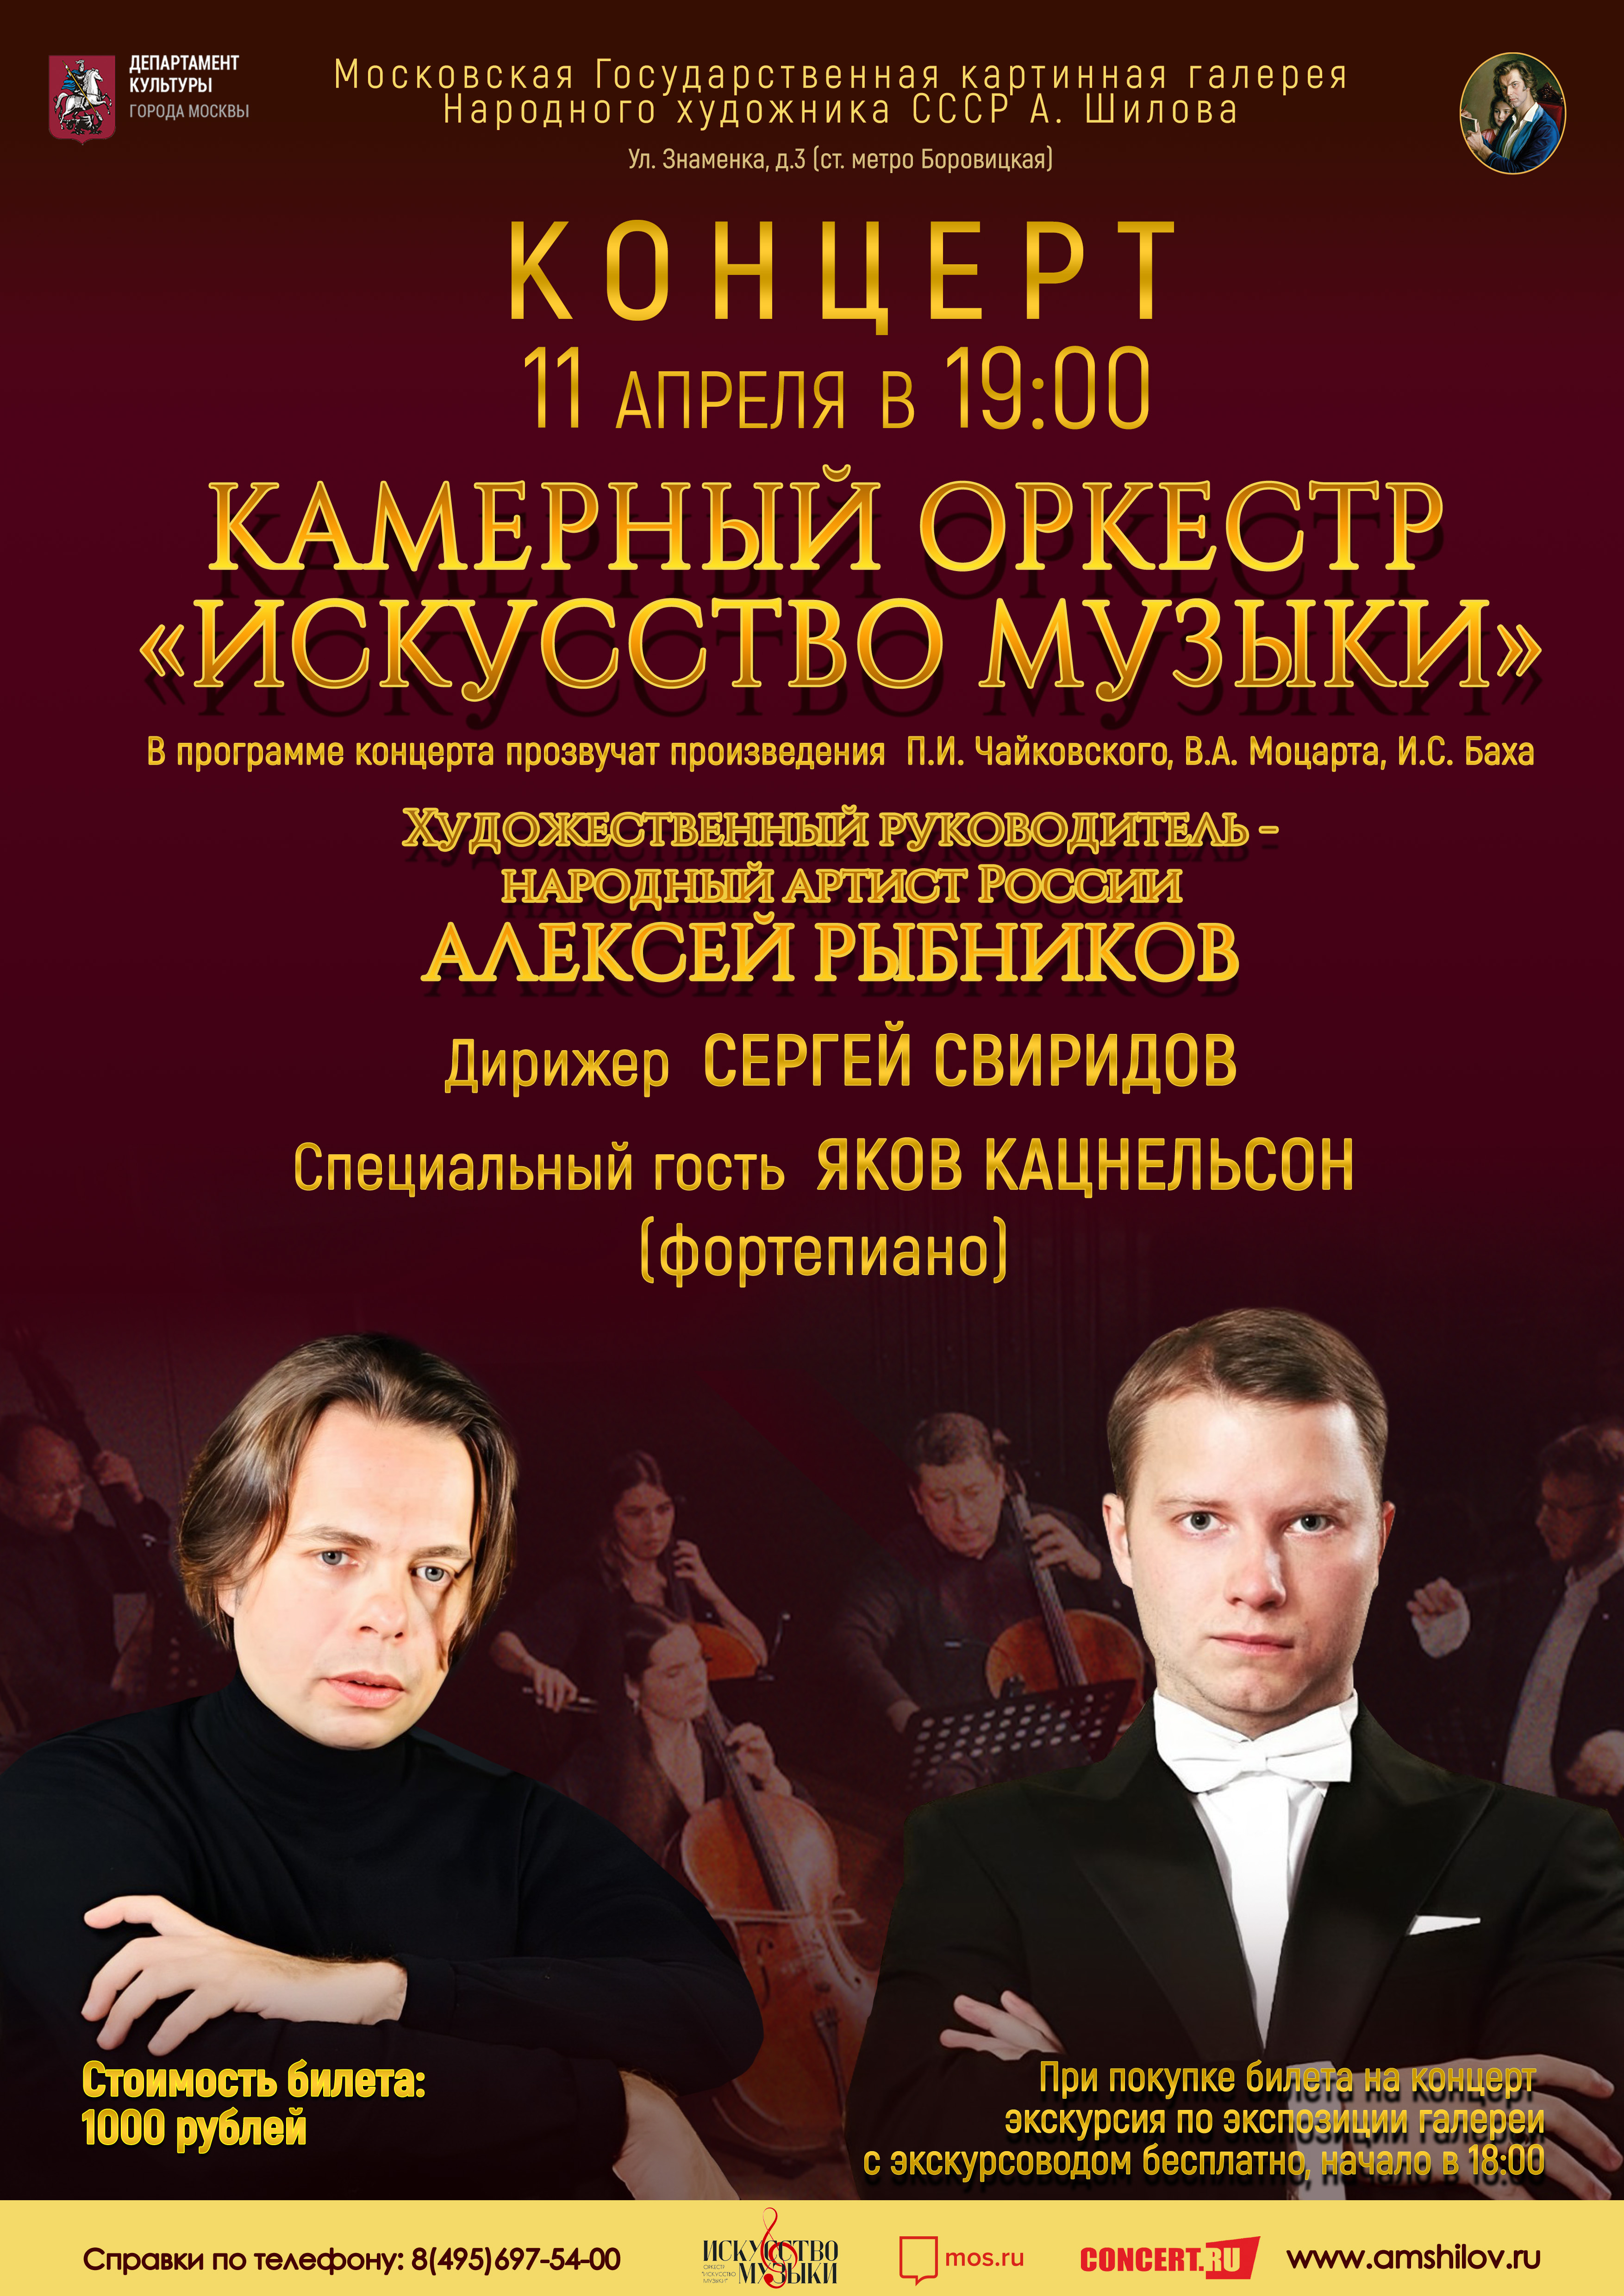  Концерт Камерного оркестра «Искусство музыки» отменен